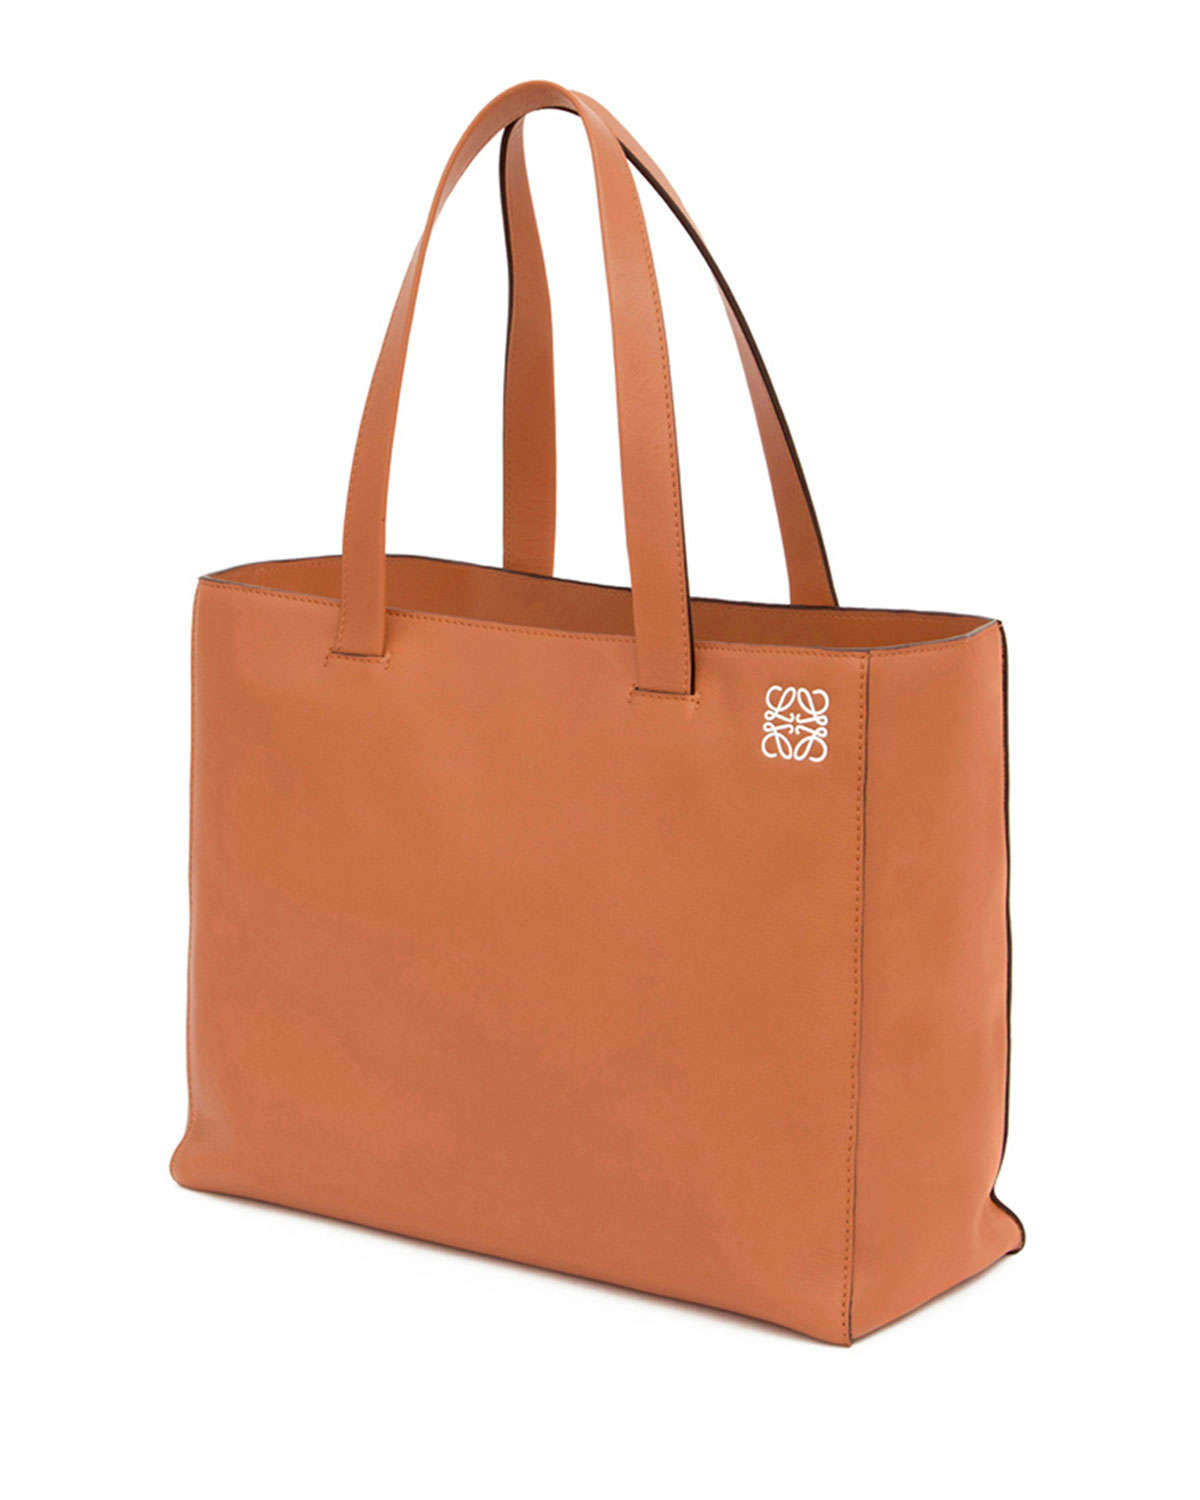 Loewe East-west Large Shopper Tote Bag in Brown - Lyst